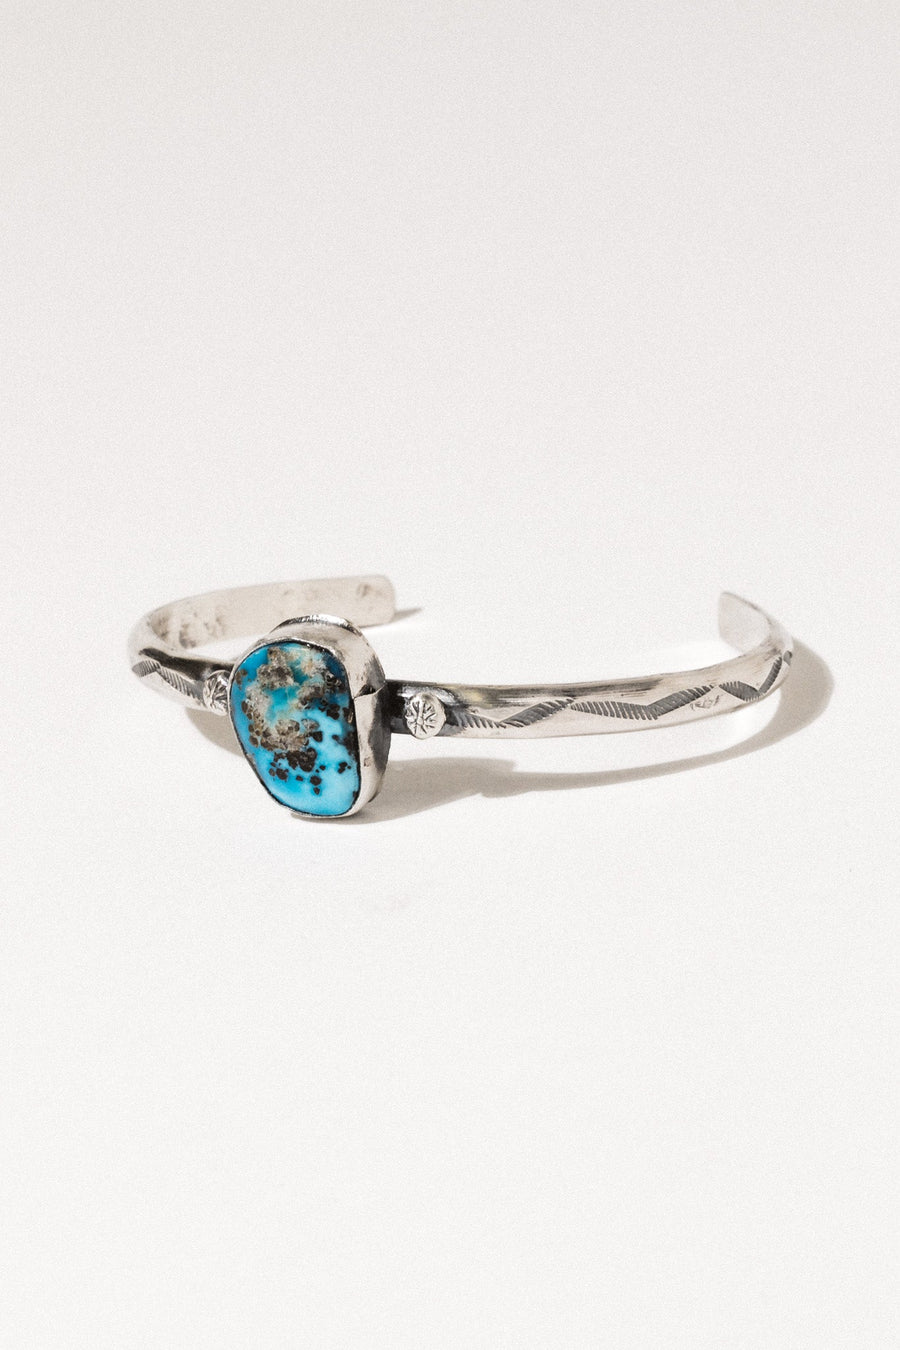 Al Zuni Jewelry Silver / Turquoise Rayen Turquoise Zuni Cuff